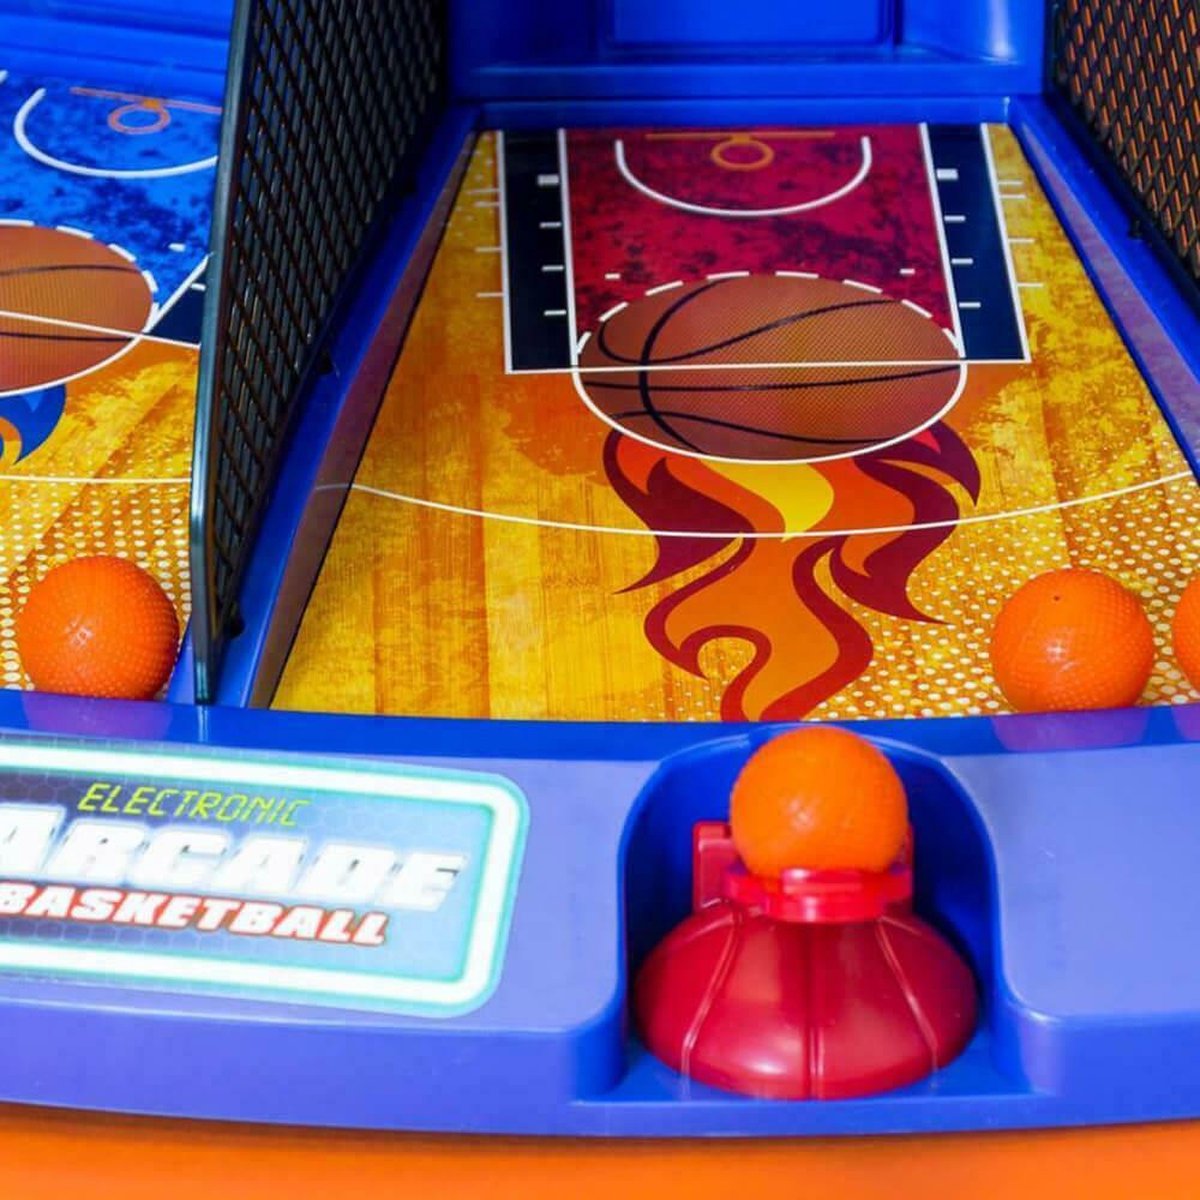 Jeu d'arcade électronique - Basketball (série néon), Fr